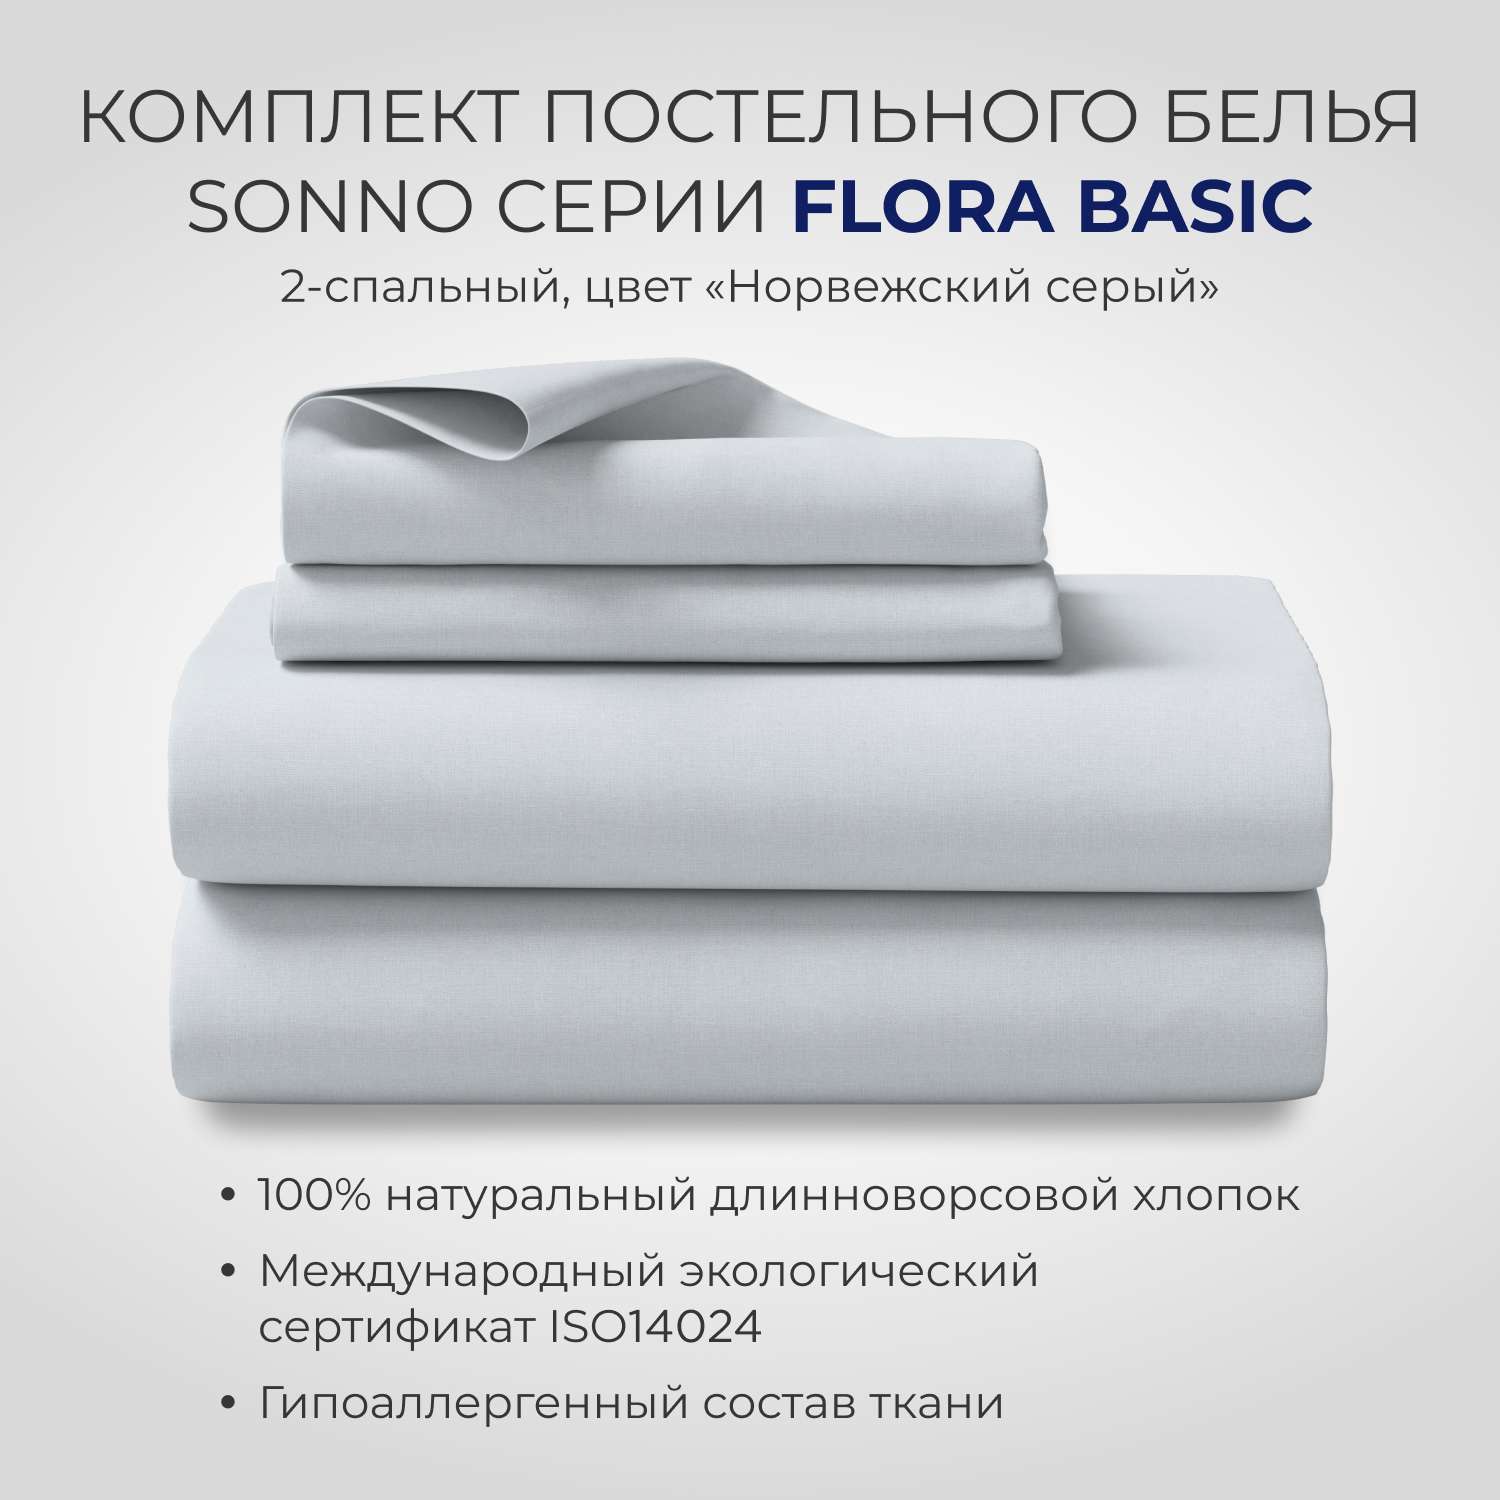 Постельное белье SONNO FLORA BASIC 2-спальный цвет Норвежский Серый - фото 1